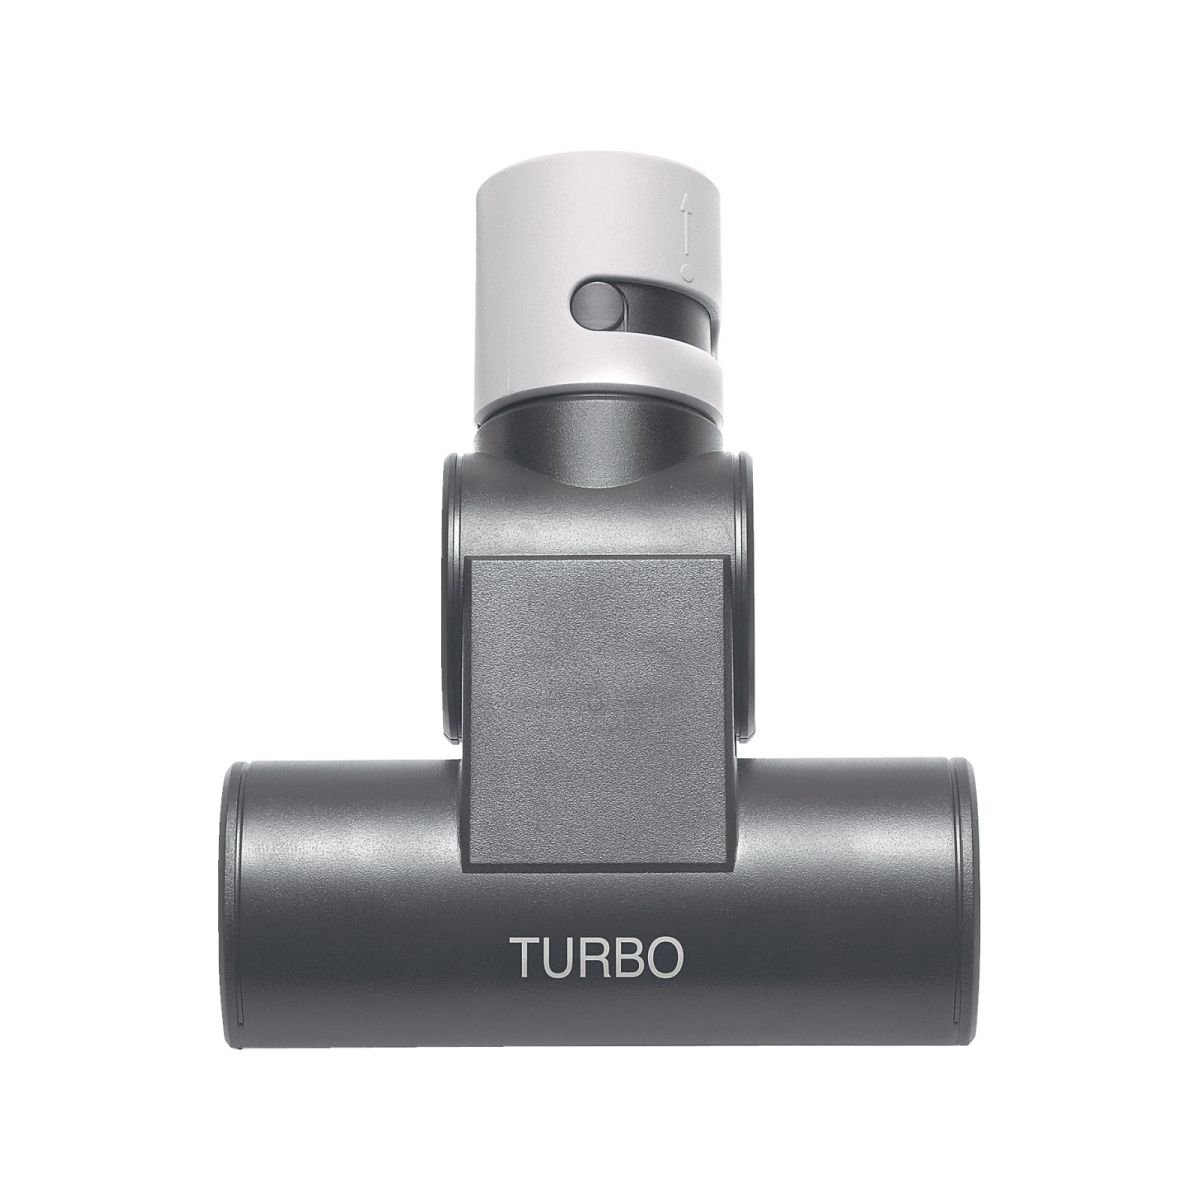 Turbomundstykke til støvsuger passer til Bosch